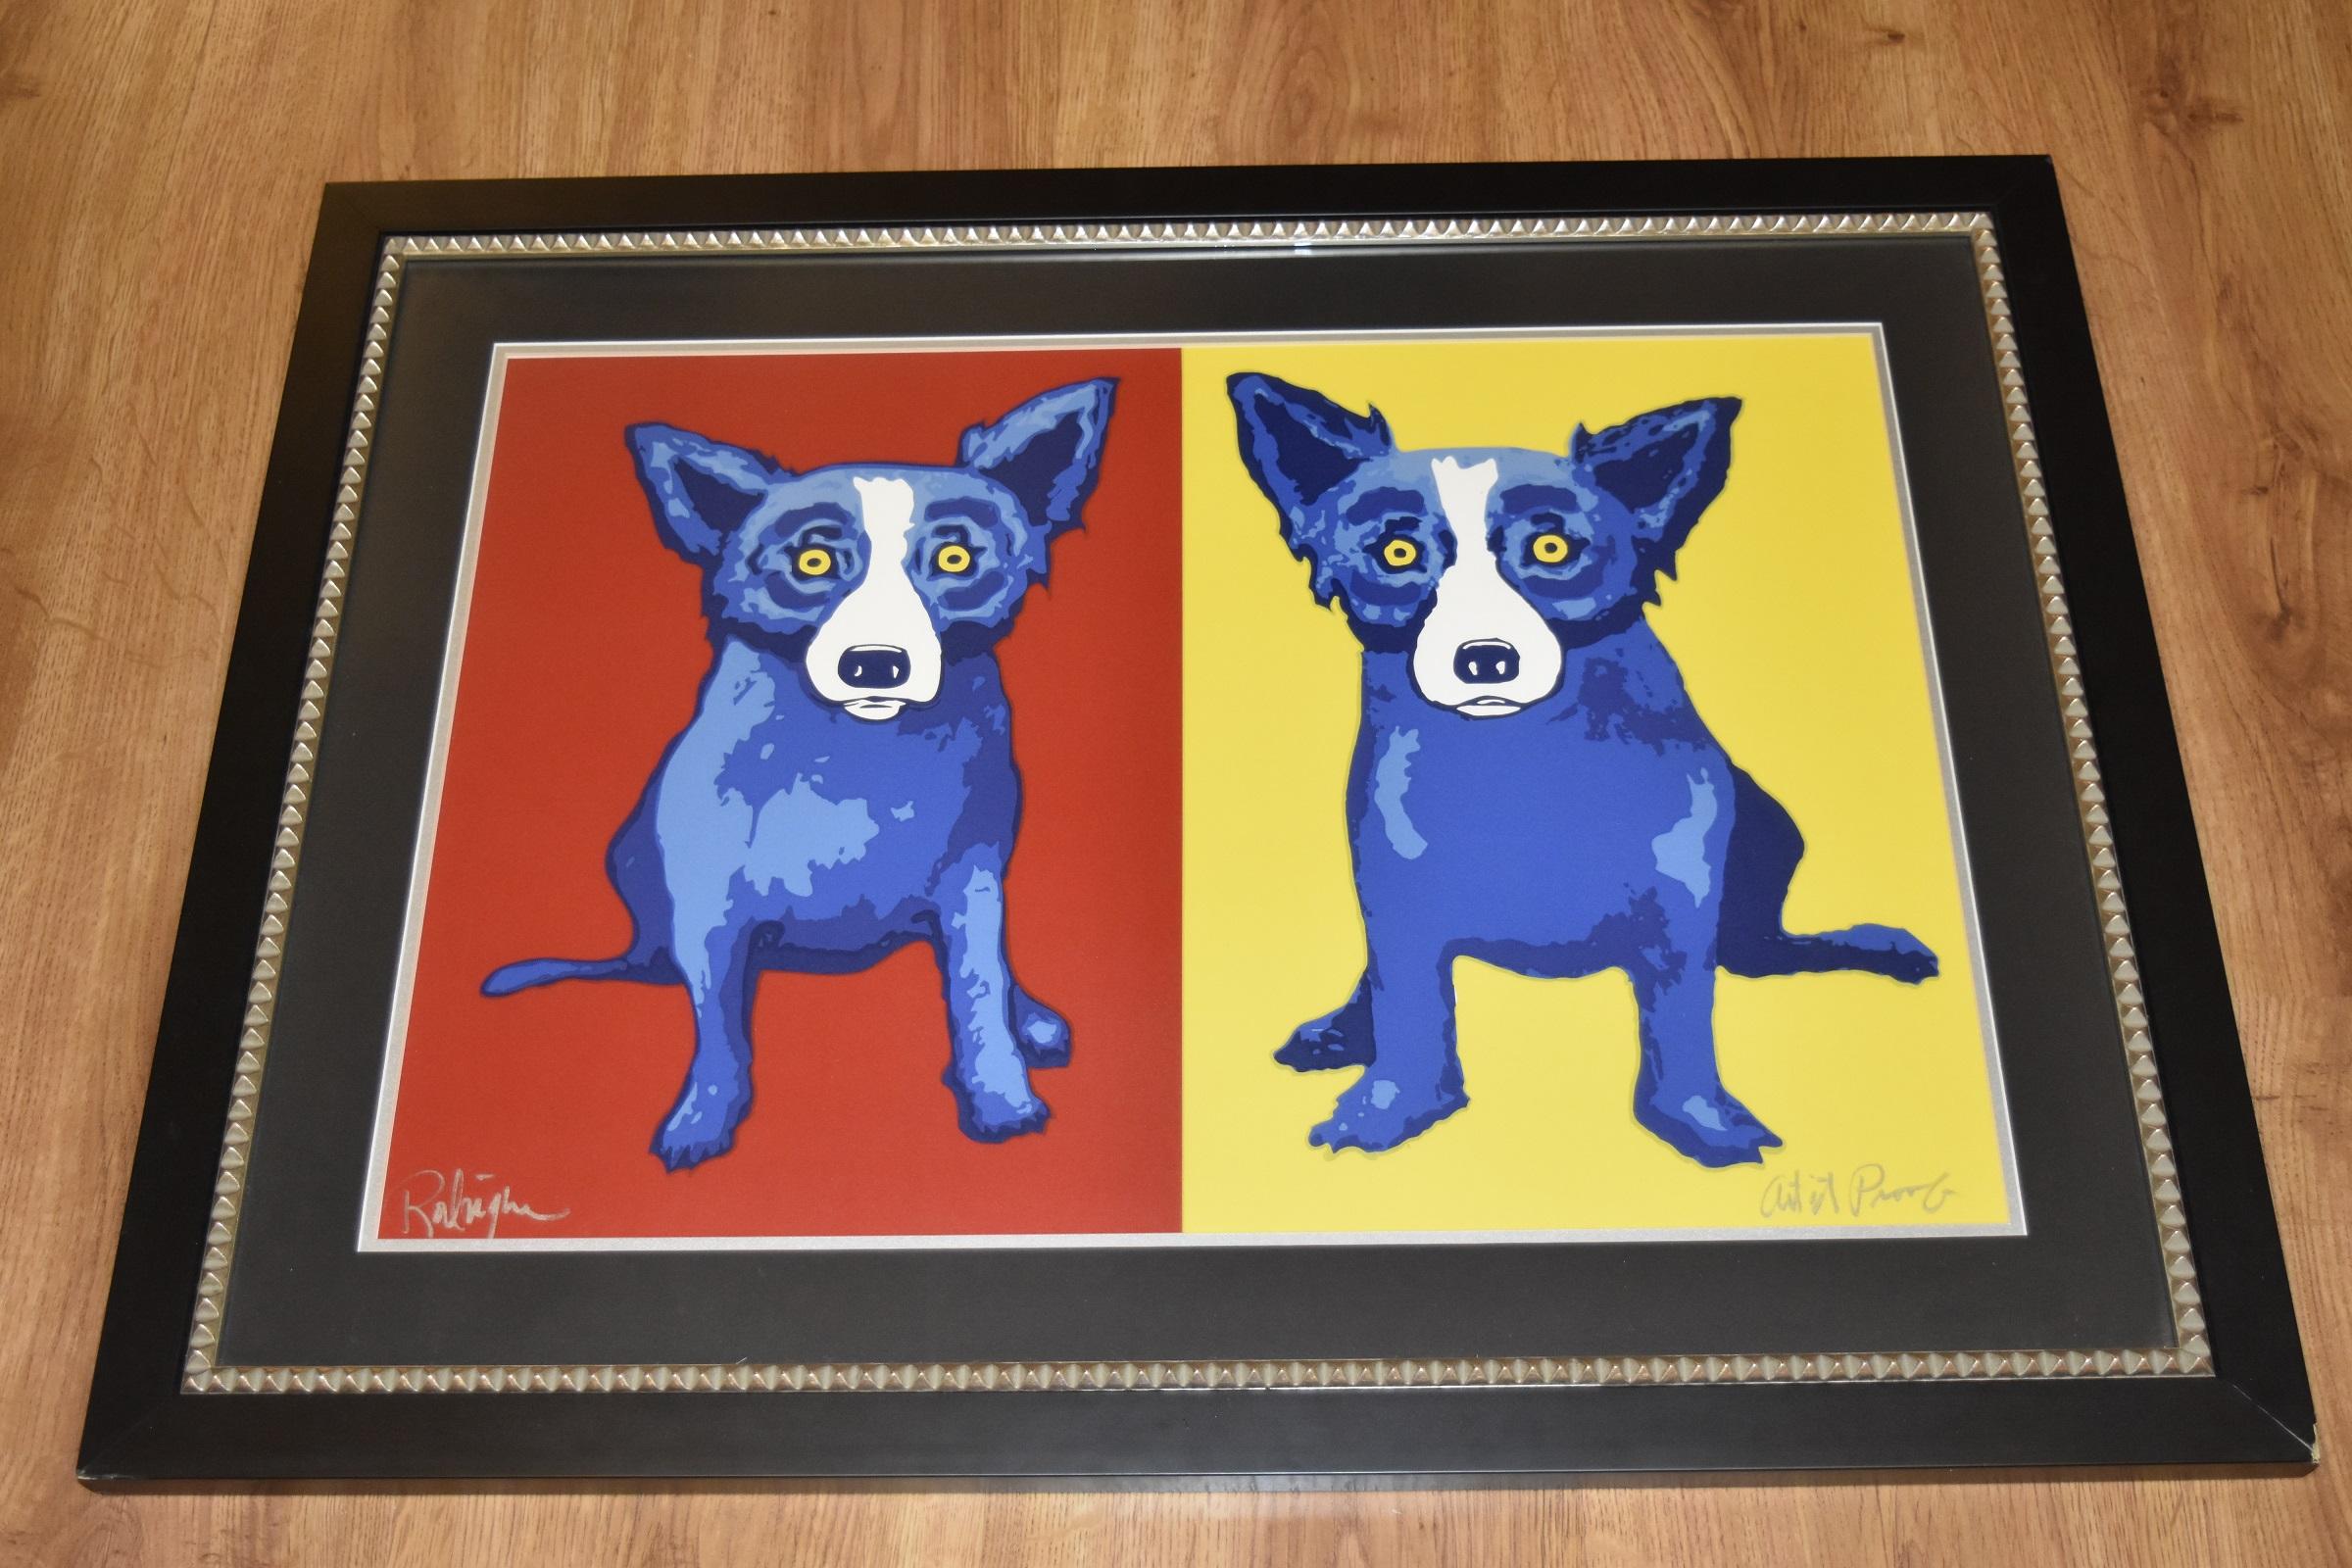 Tissu en soie rouge/jaune avec chien bleu imprimé, signé - Print de George Rodrigue